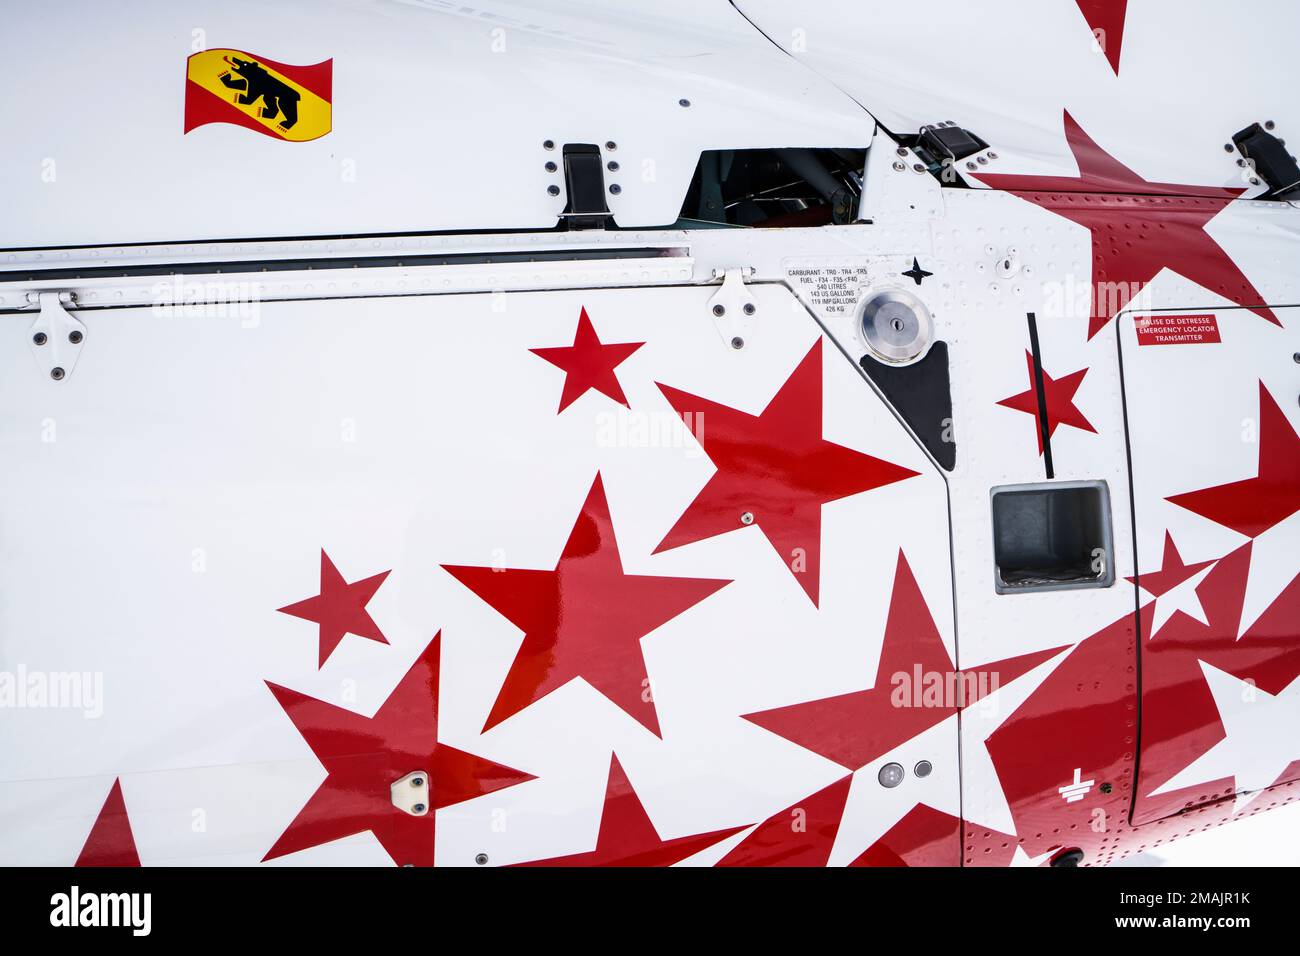 Hélicoptère suisse, vue latérale rapprochée avec étoiles rouges et blanches sur le châssis. Entrée de carburant, marchepied sur le châssis. Grindelwald, Suisse Banque D'Images